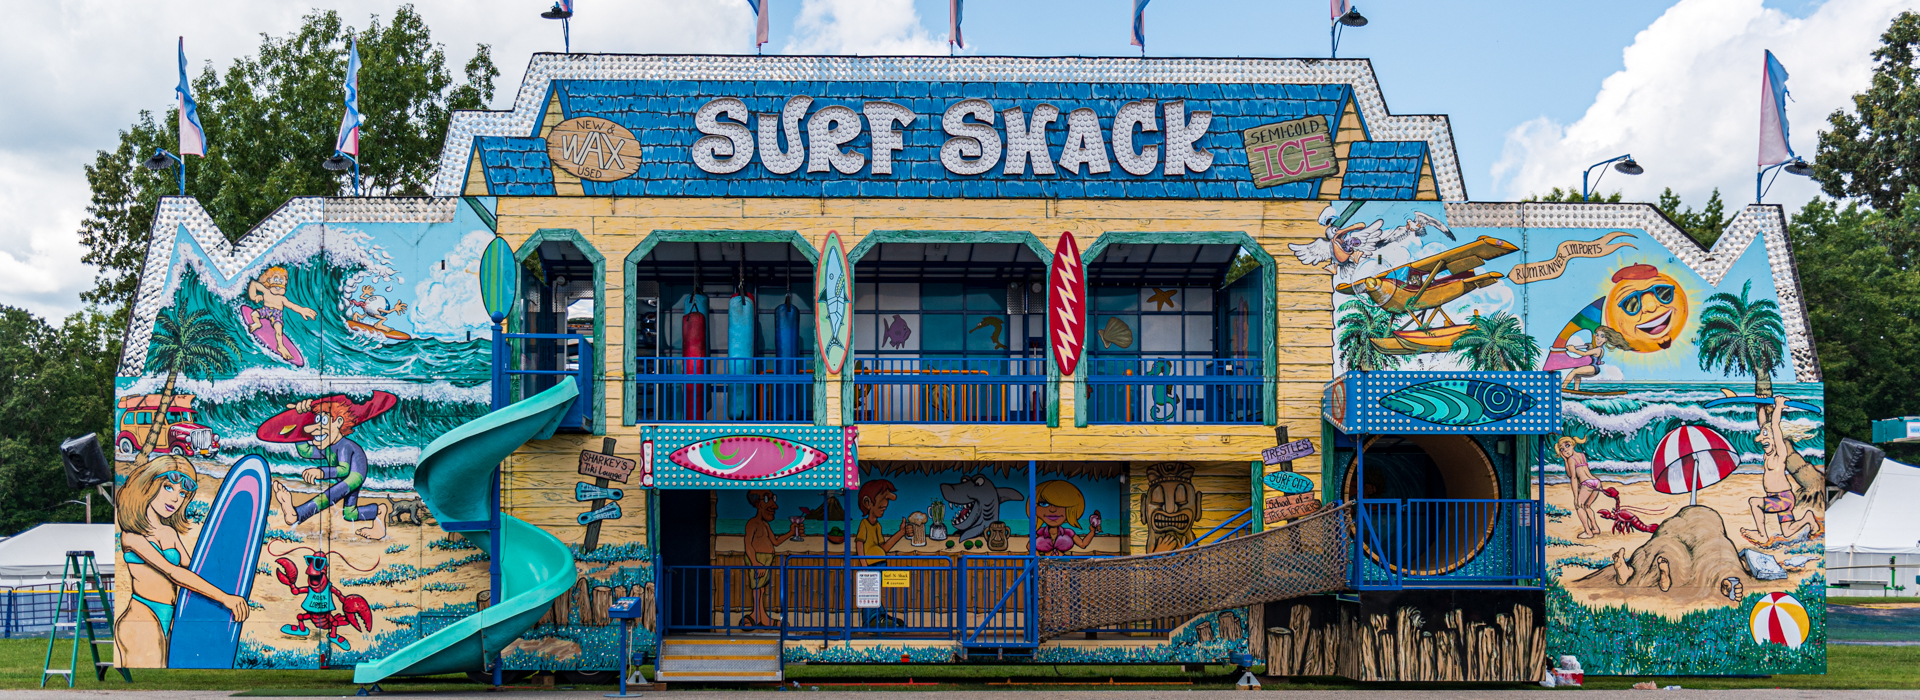 Surf Shack Fun House